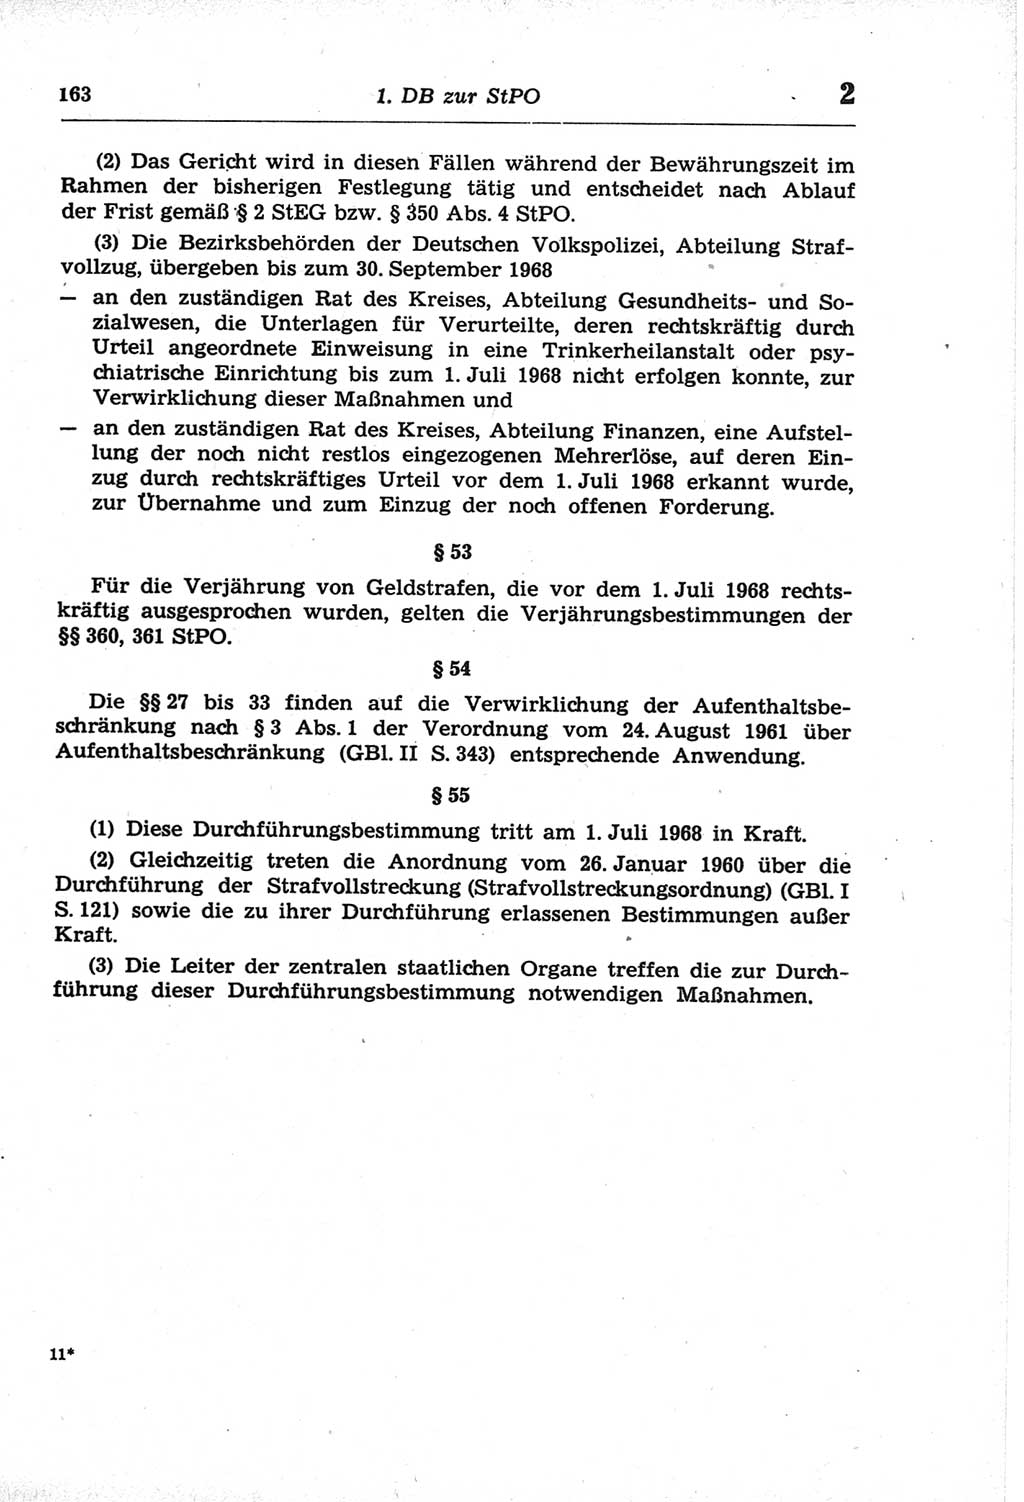 Strafprozeßordnung (StPO) der Deutschen Demokratischen Republik (DDR) und angrenzende Gesetze und Bestimmungen 1968, Seite 163 (StPO Ges. Bstgn. DDR 1968, S. 163)